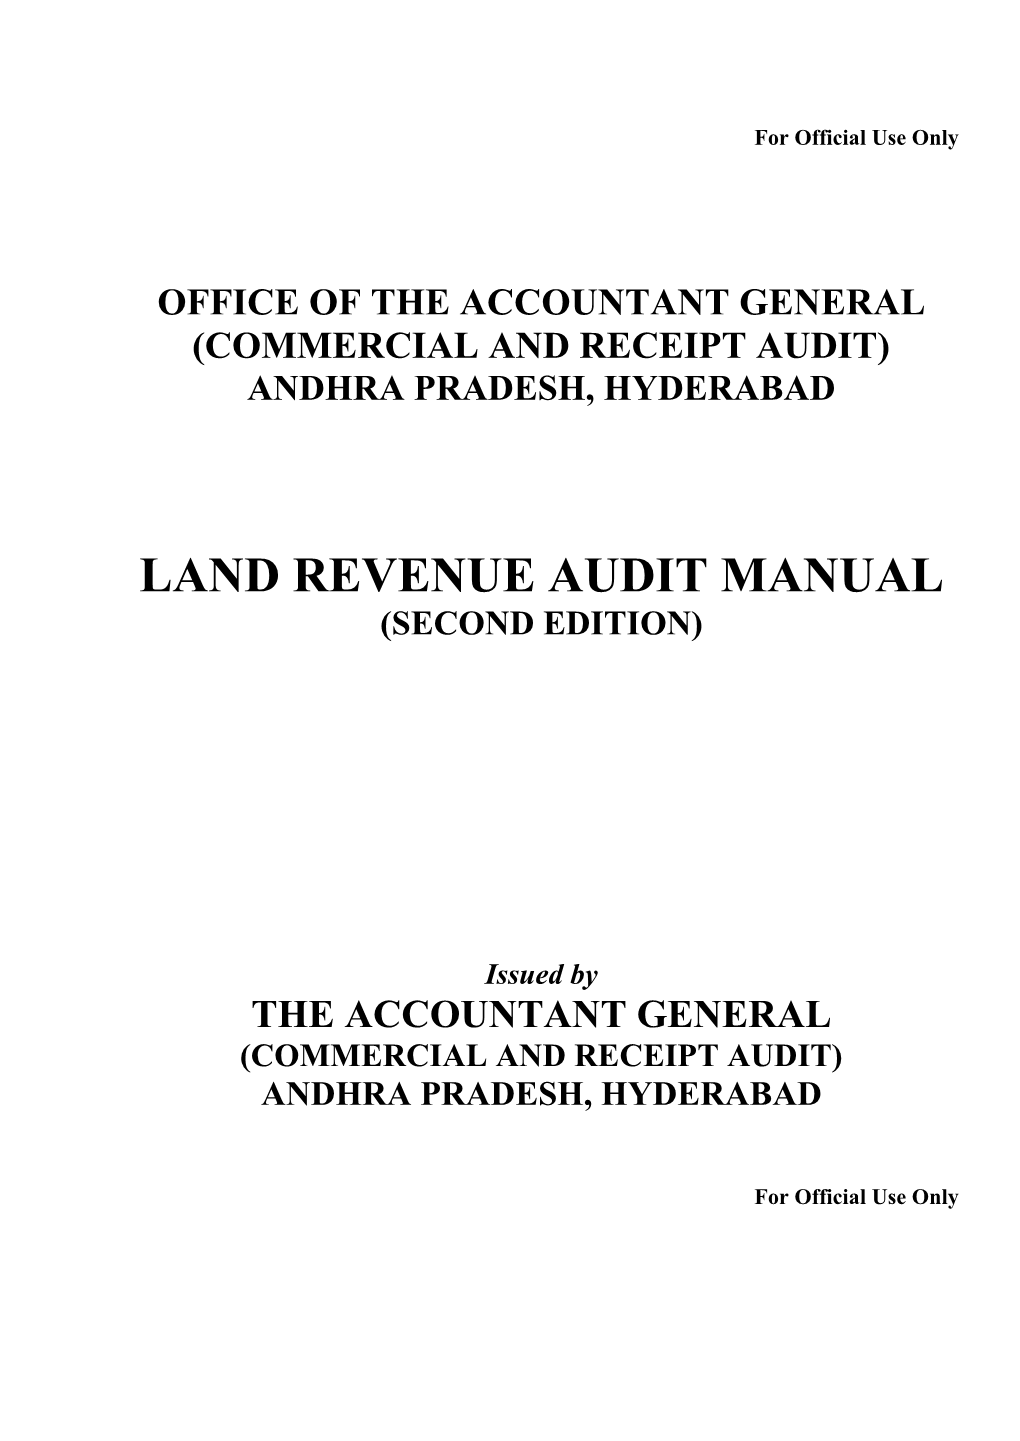 Land Revenue Audit Manual (Second Edition)